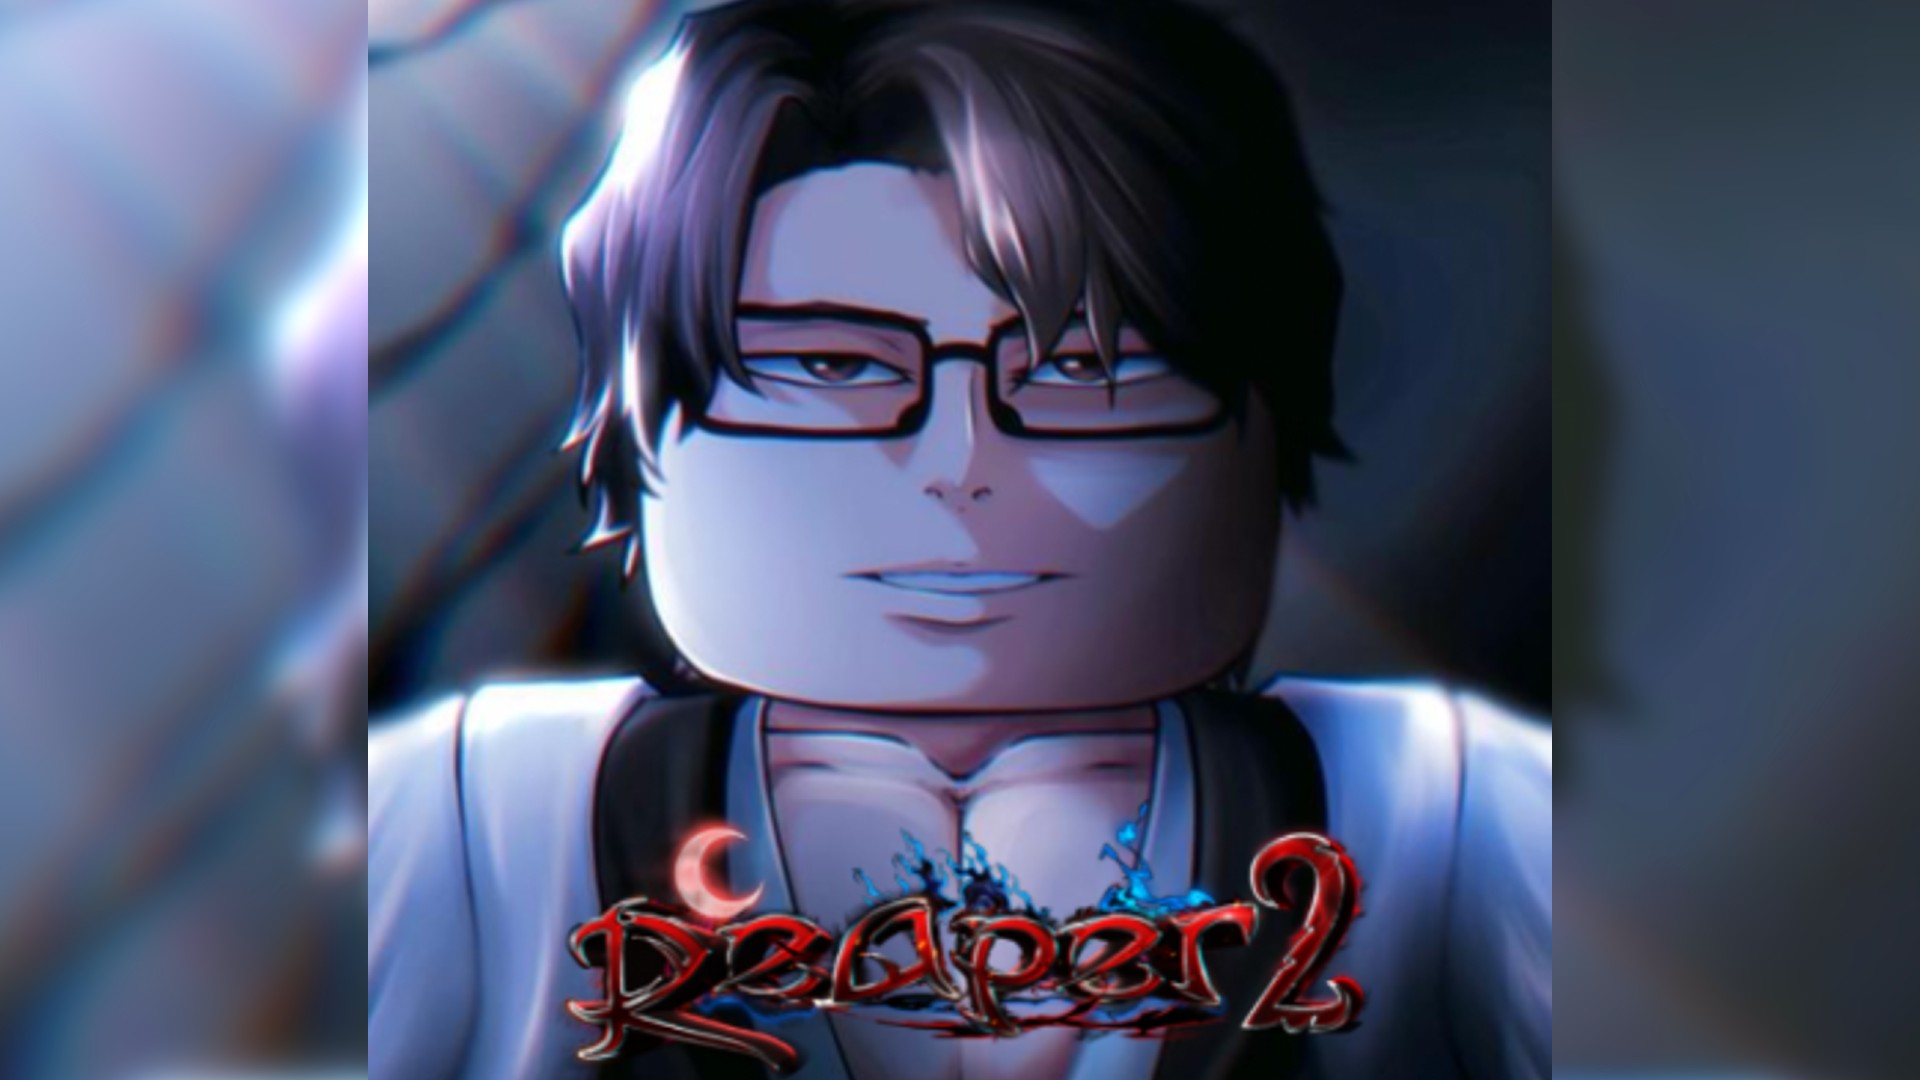 Roblox Reaper 2 codes (December 2023) - Gamepur